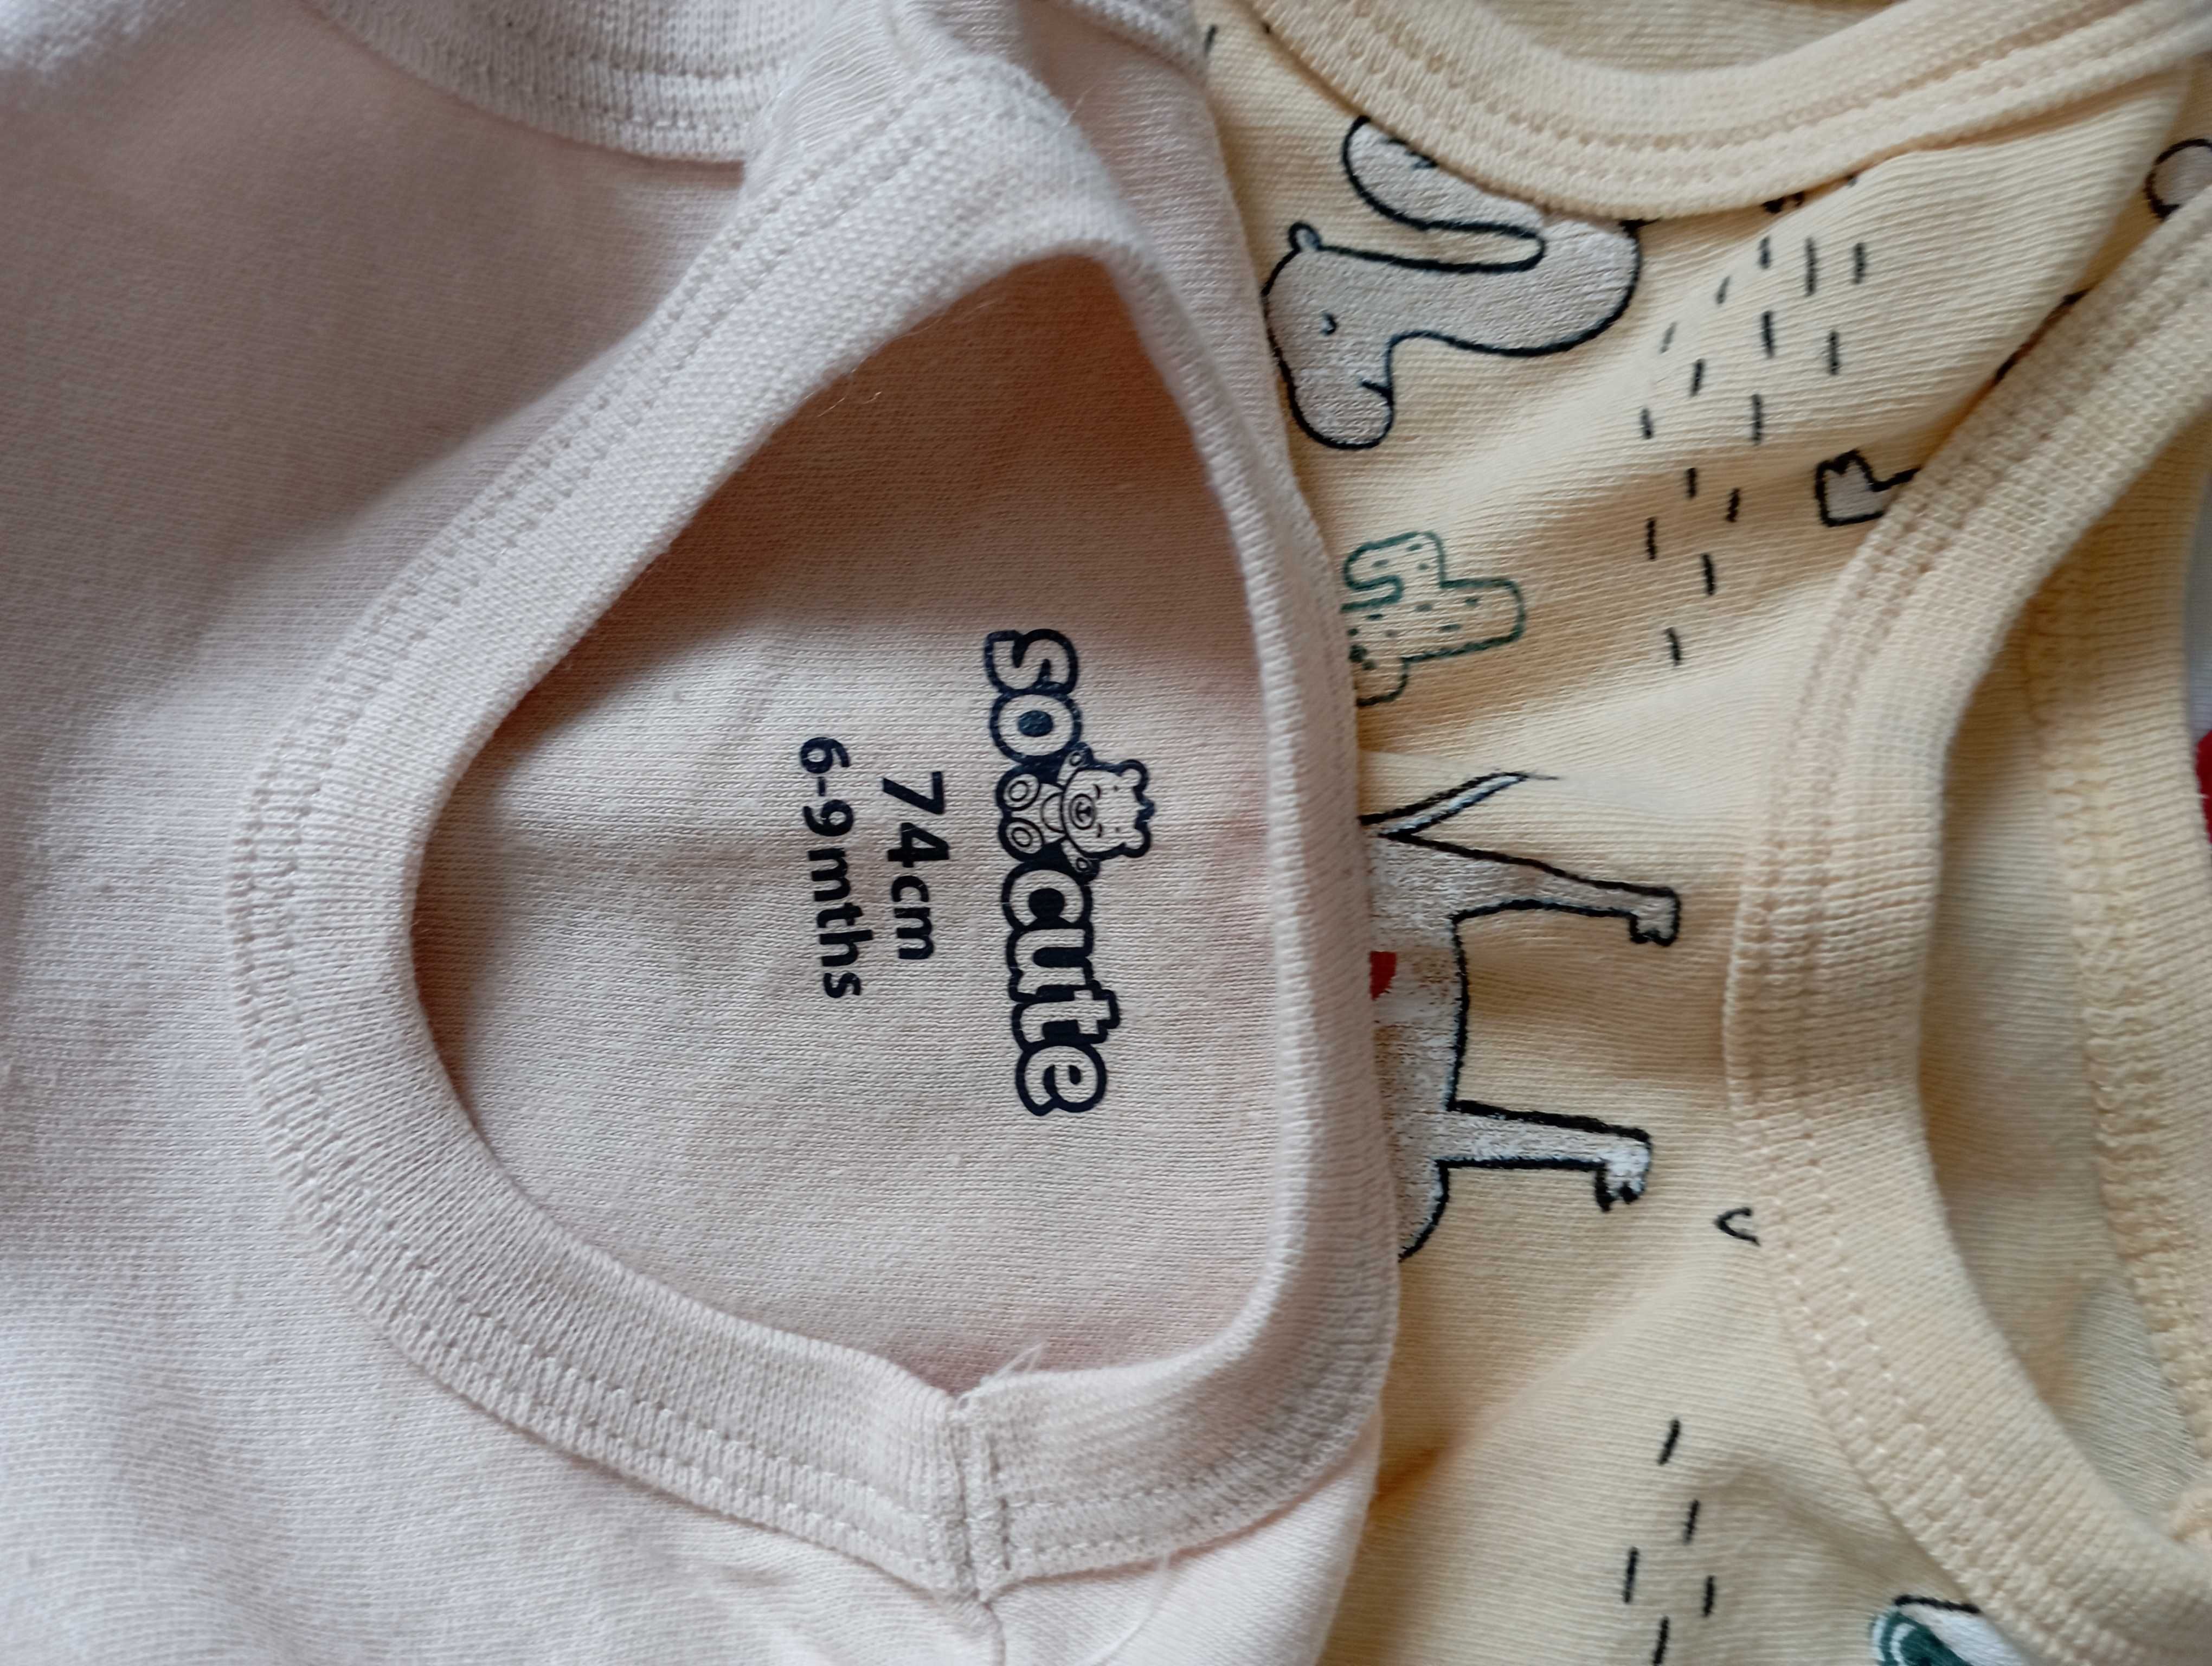 Lot body/tricou bebe fetiță, 6-9 luni, măr 68/74 cm